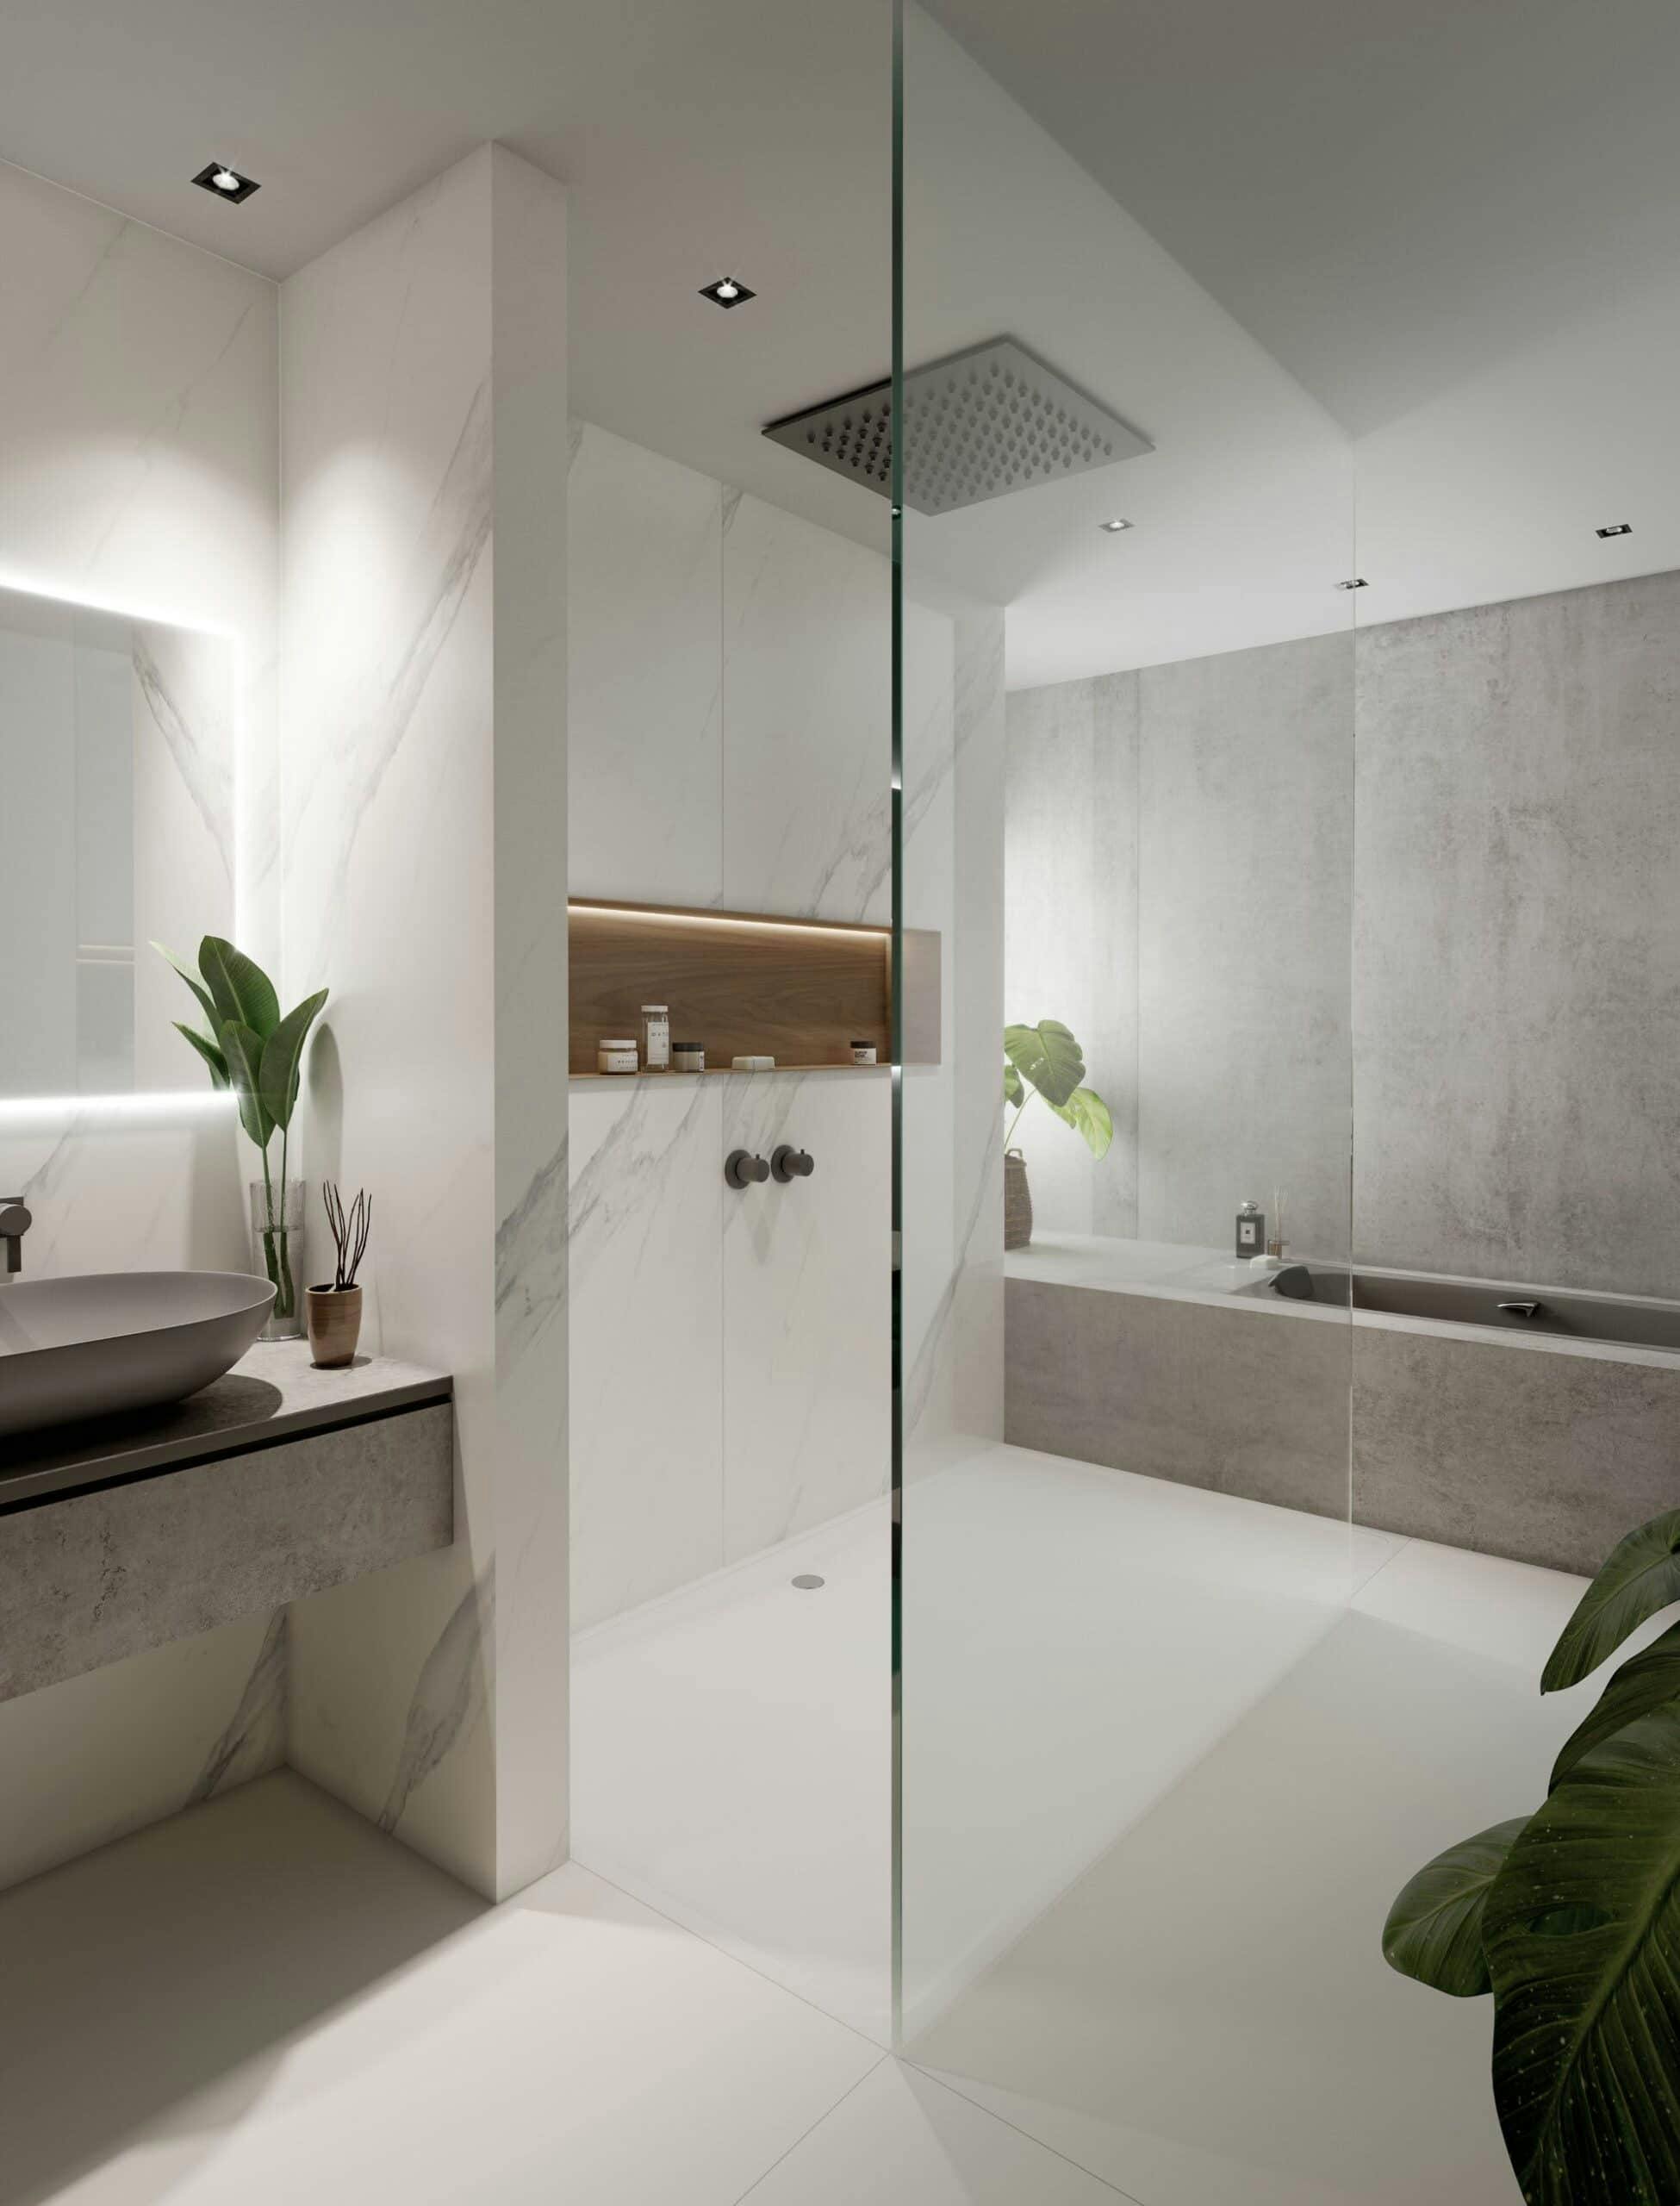 Numéro d'image 32 de la section actuelle de {{Five cool design ideas for grey and white bathrooms}} de Cosentino France